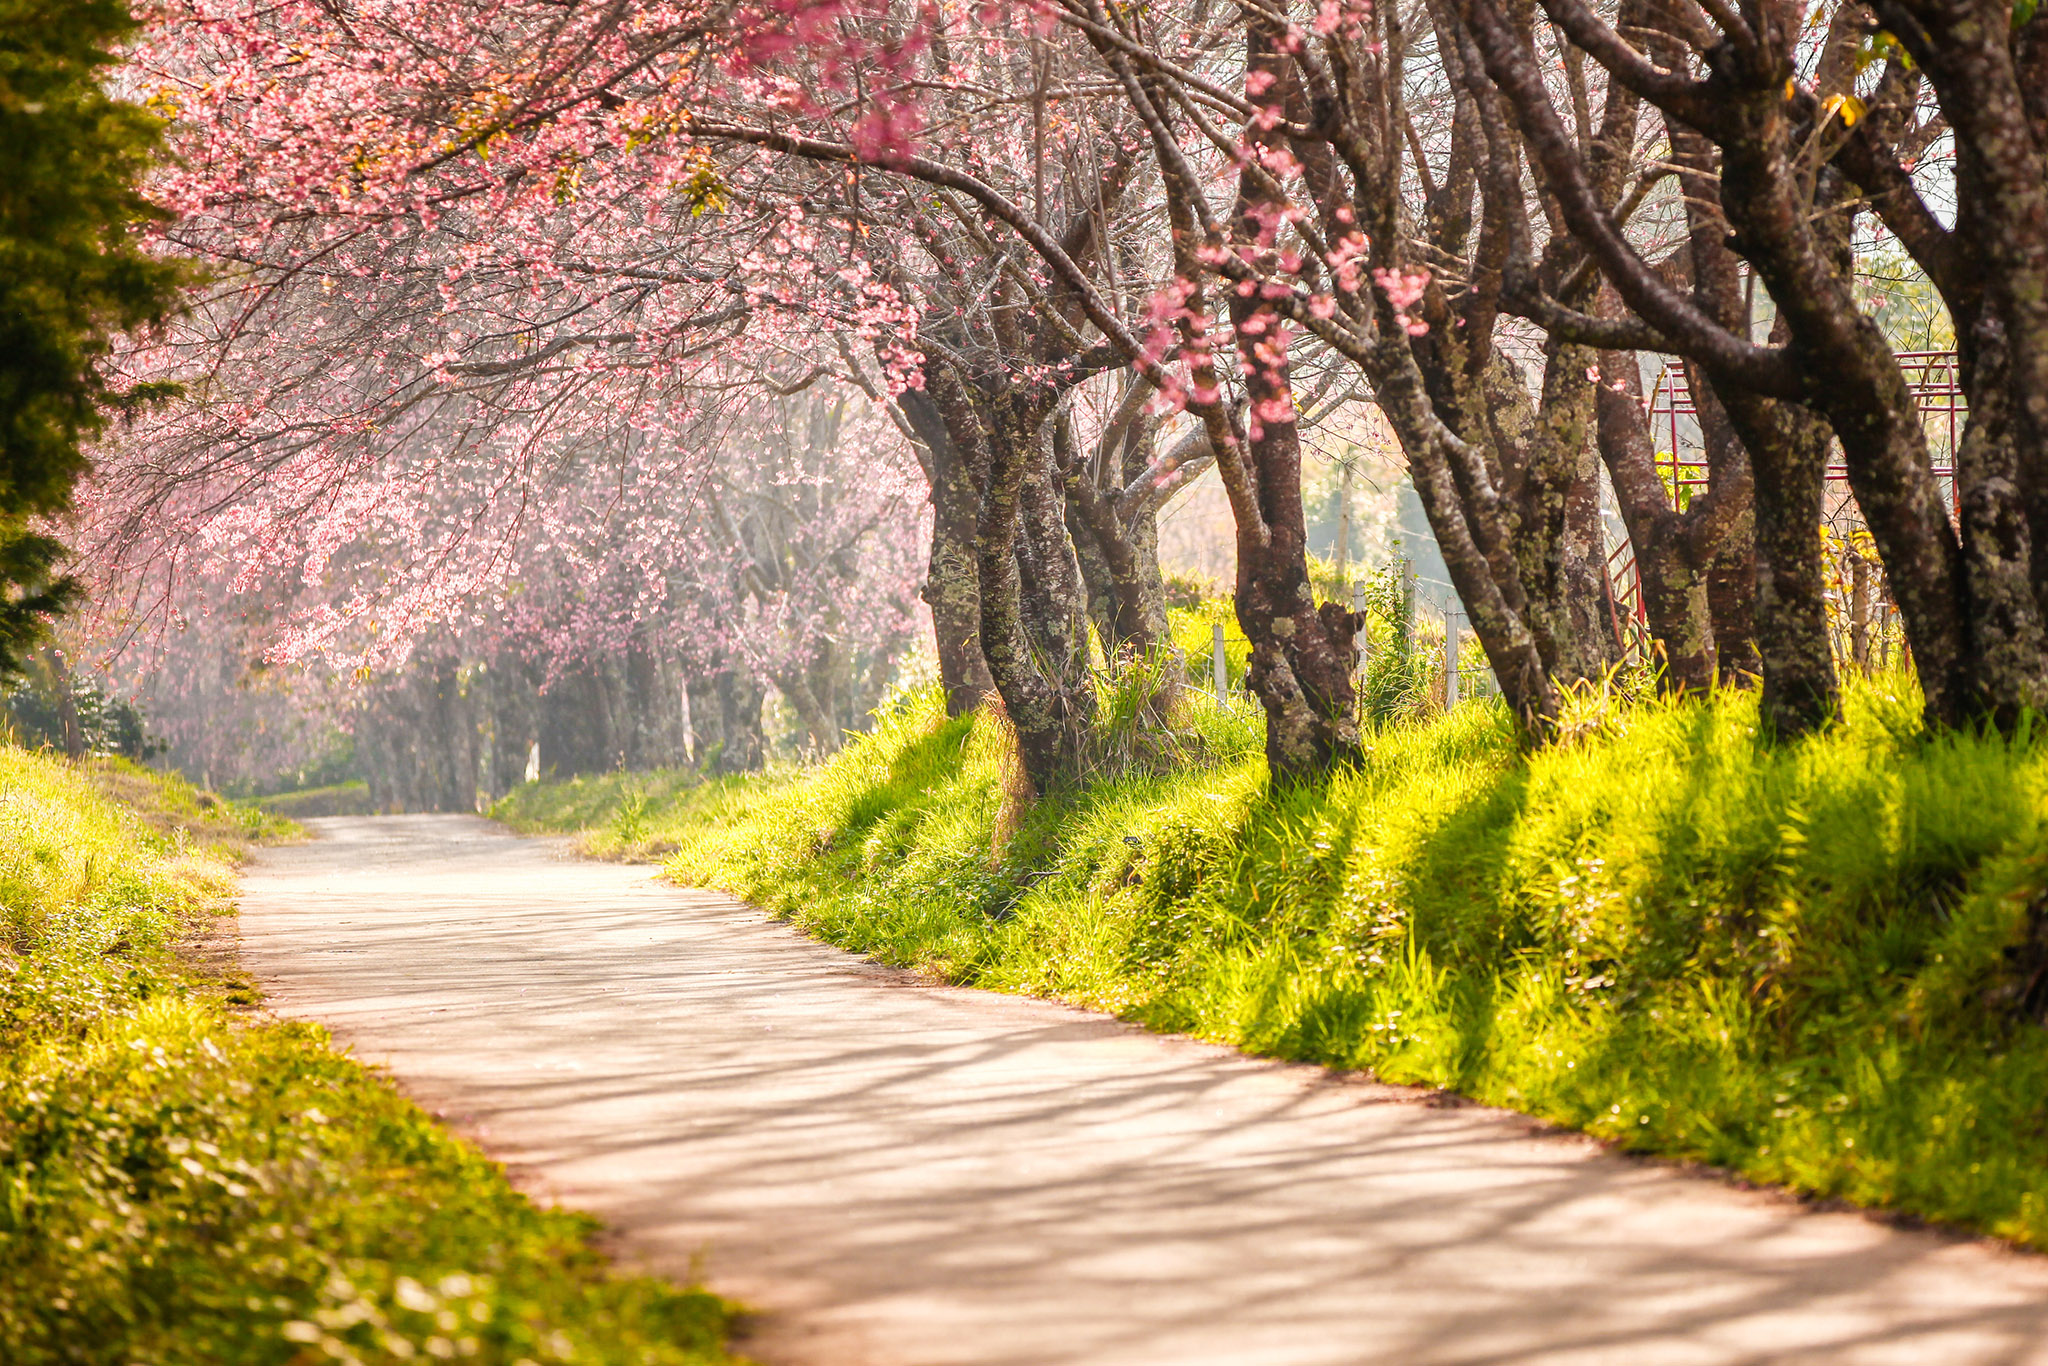 Hoa đào mùa xuân: Hãy cùng chiêm ngưỡng hình ảnh những cành hoa đào đang nở rực rỡ vào mùa xuân này. Những màu hồng tinh khôi và những cánh hoa xinh đẹp chắc chắn sẽ khiến bạn say đắm.